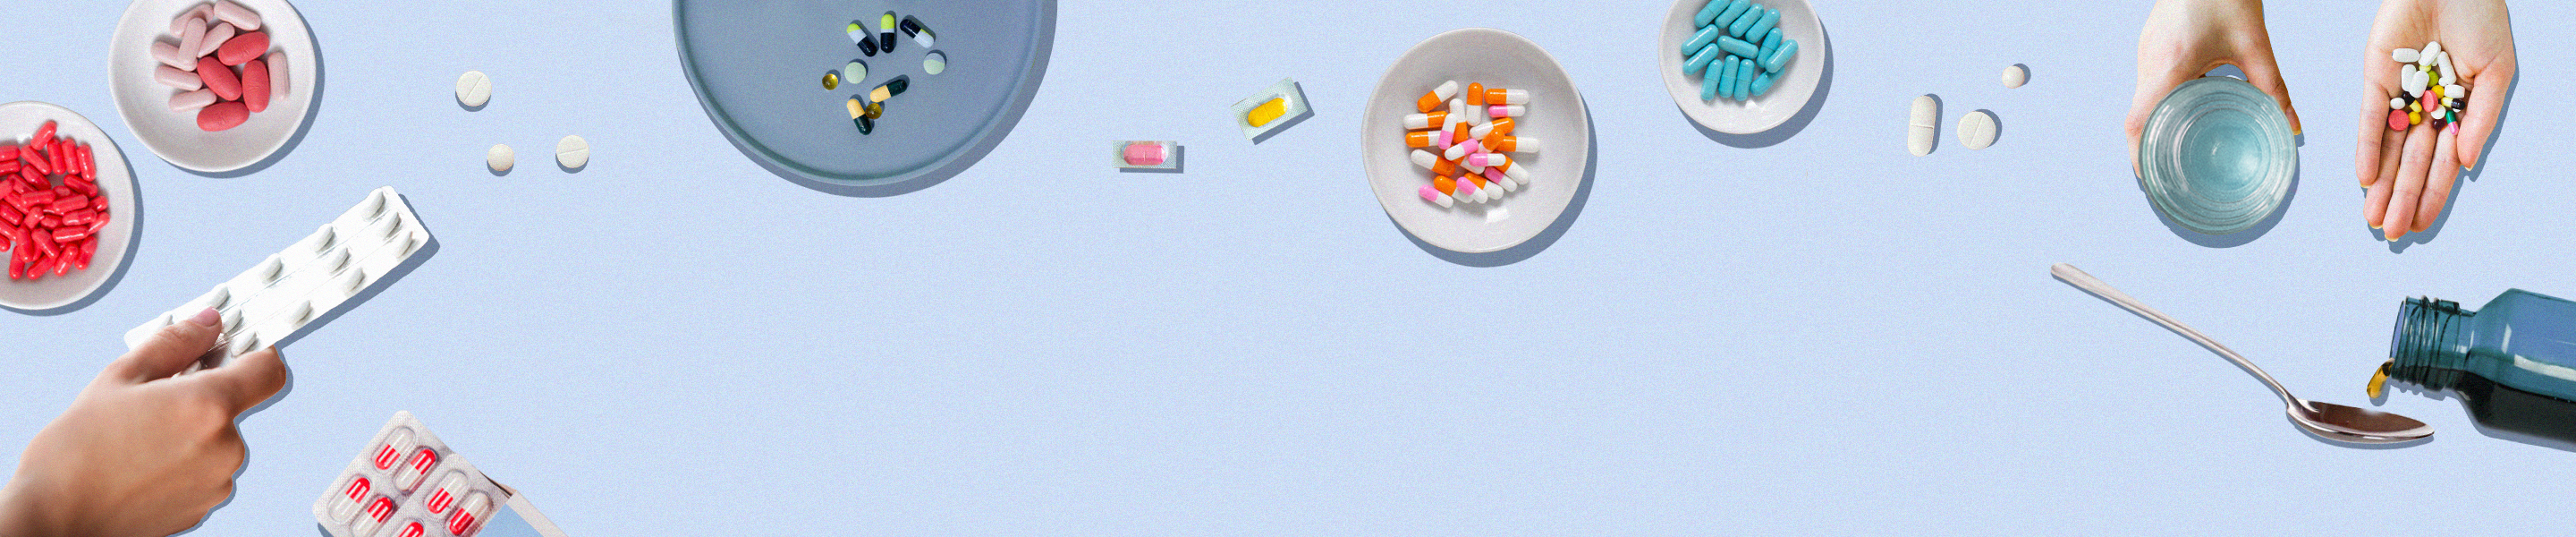 Imagem ilustrativa do tema Bulas e remédios